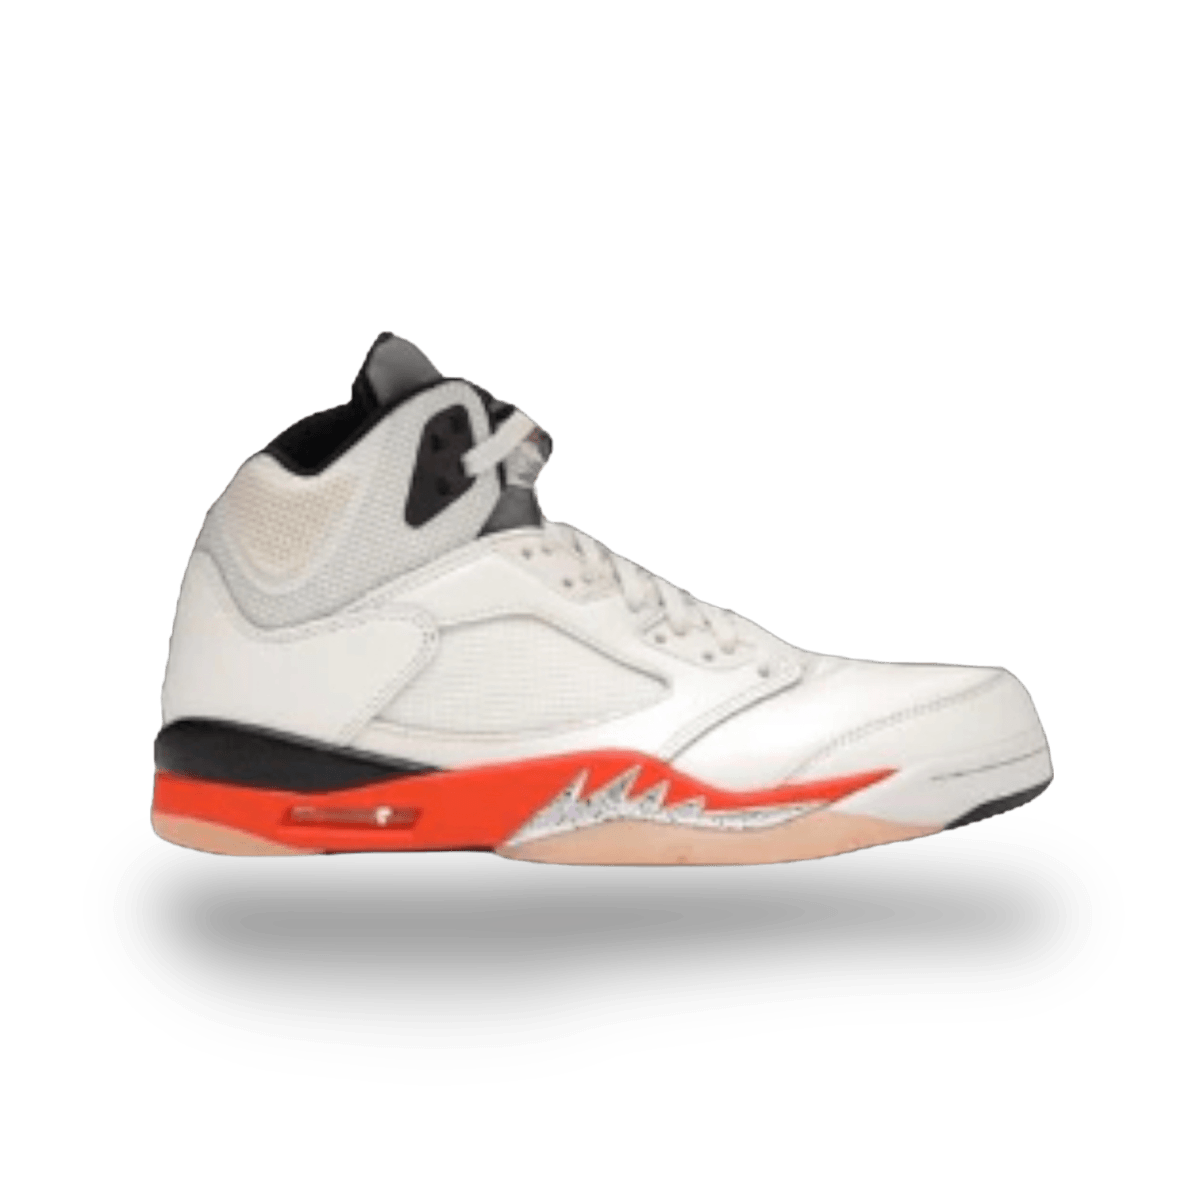 Jordan 5 Retro Shattered Backboard - Mid Sneaker - Jawns on Fire Sneakers & Streetwear